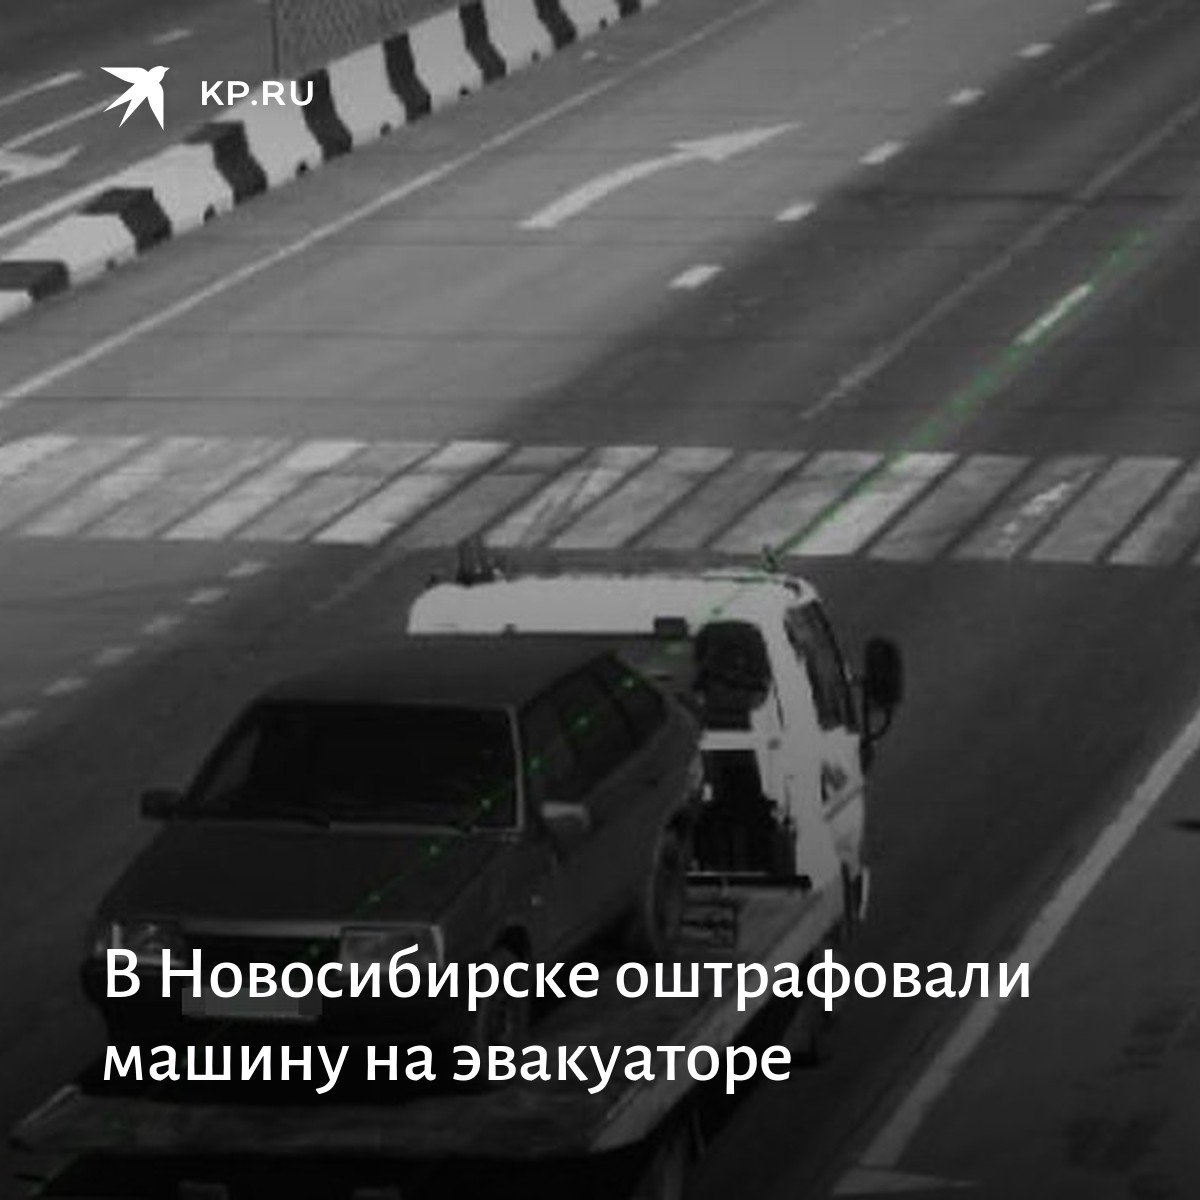 Https nsk kp ru. Машина с камерой. Эвакуатор дотан для машины. Камеры скорость Новосибирск. ДТП 4 машины эвакуатор.